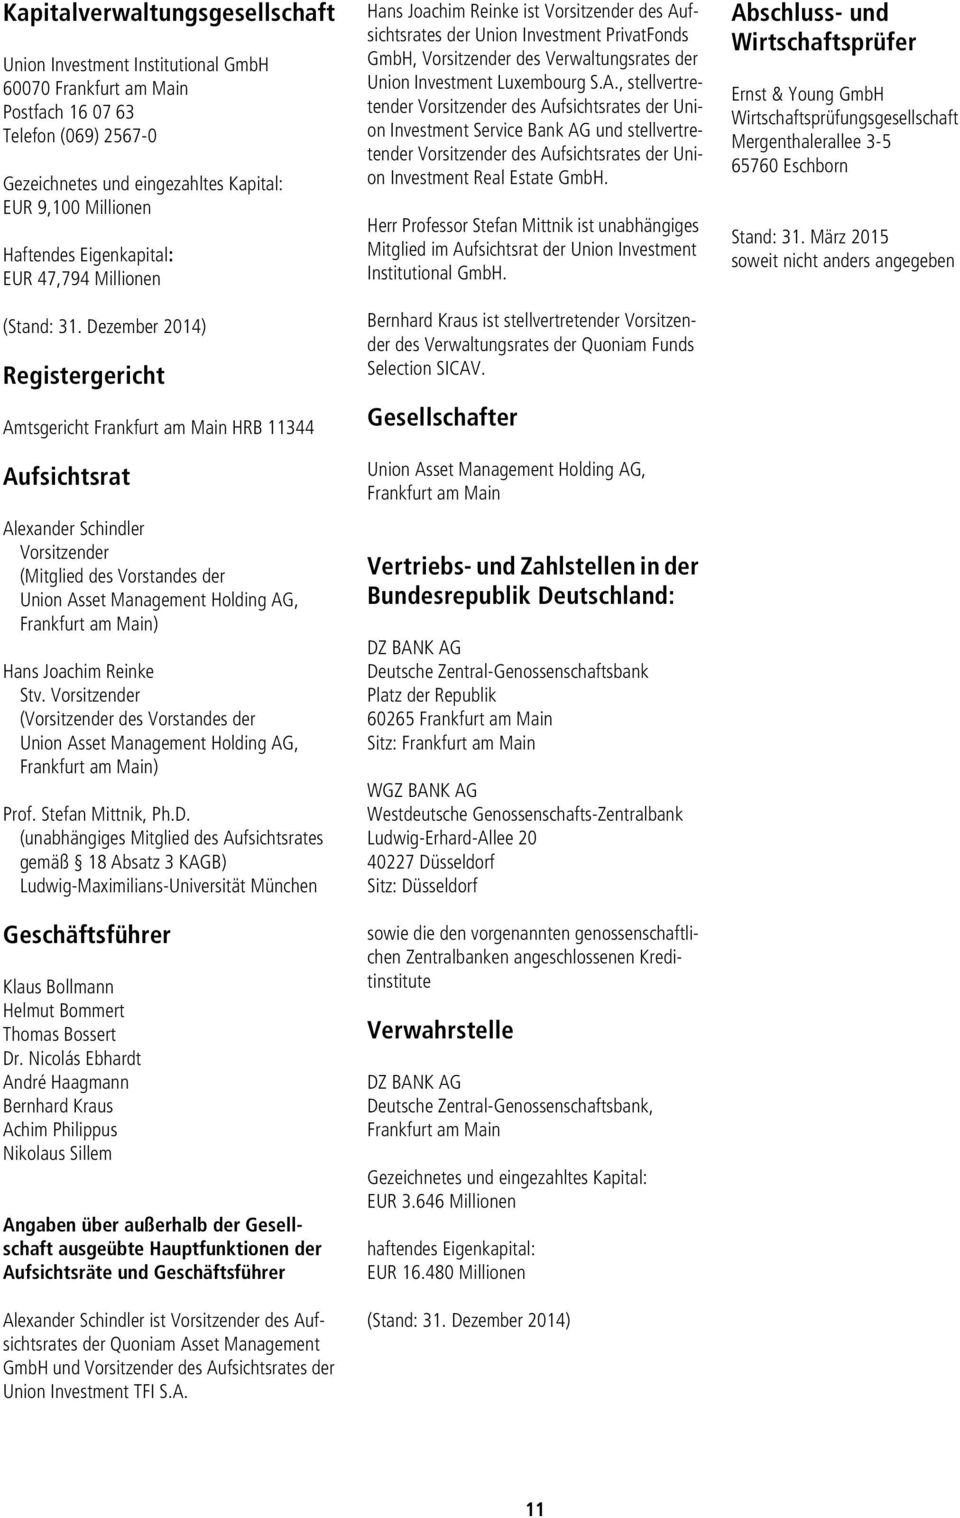 Dezember 2014) Registergericht Amtsgericht Frankfurt am Main HRB 11344 Aufsichtsrat Alexander Schindler Vorsitzender (Mitglied des Vorstandes der Union Asset Management Holding AG, Frankfurt am Main)